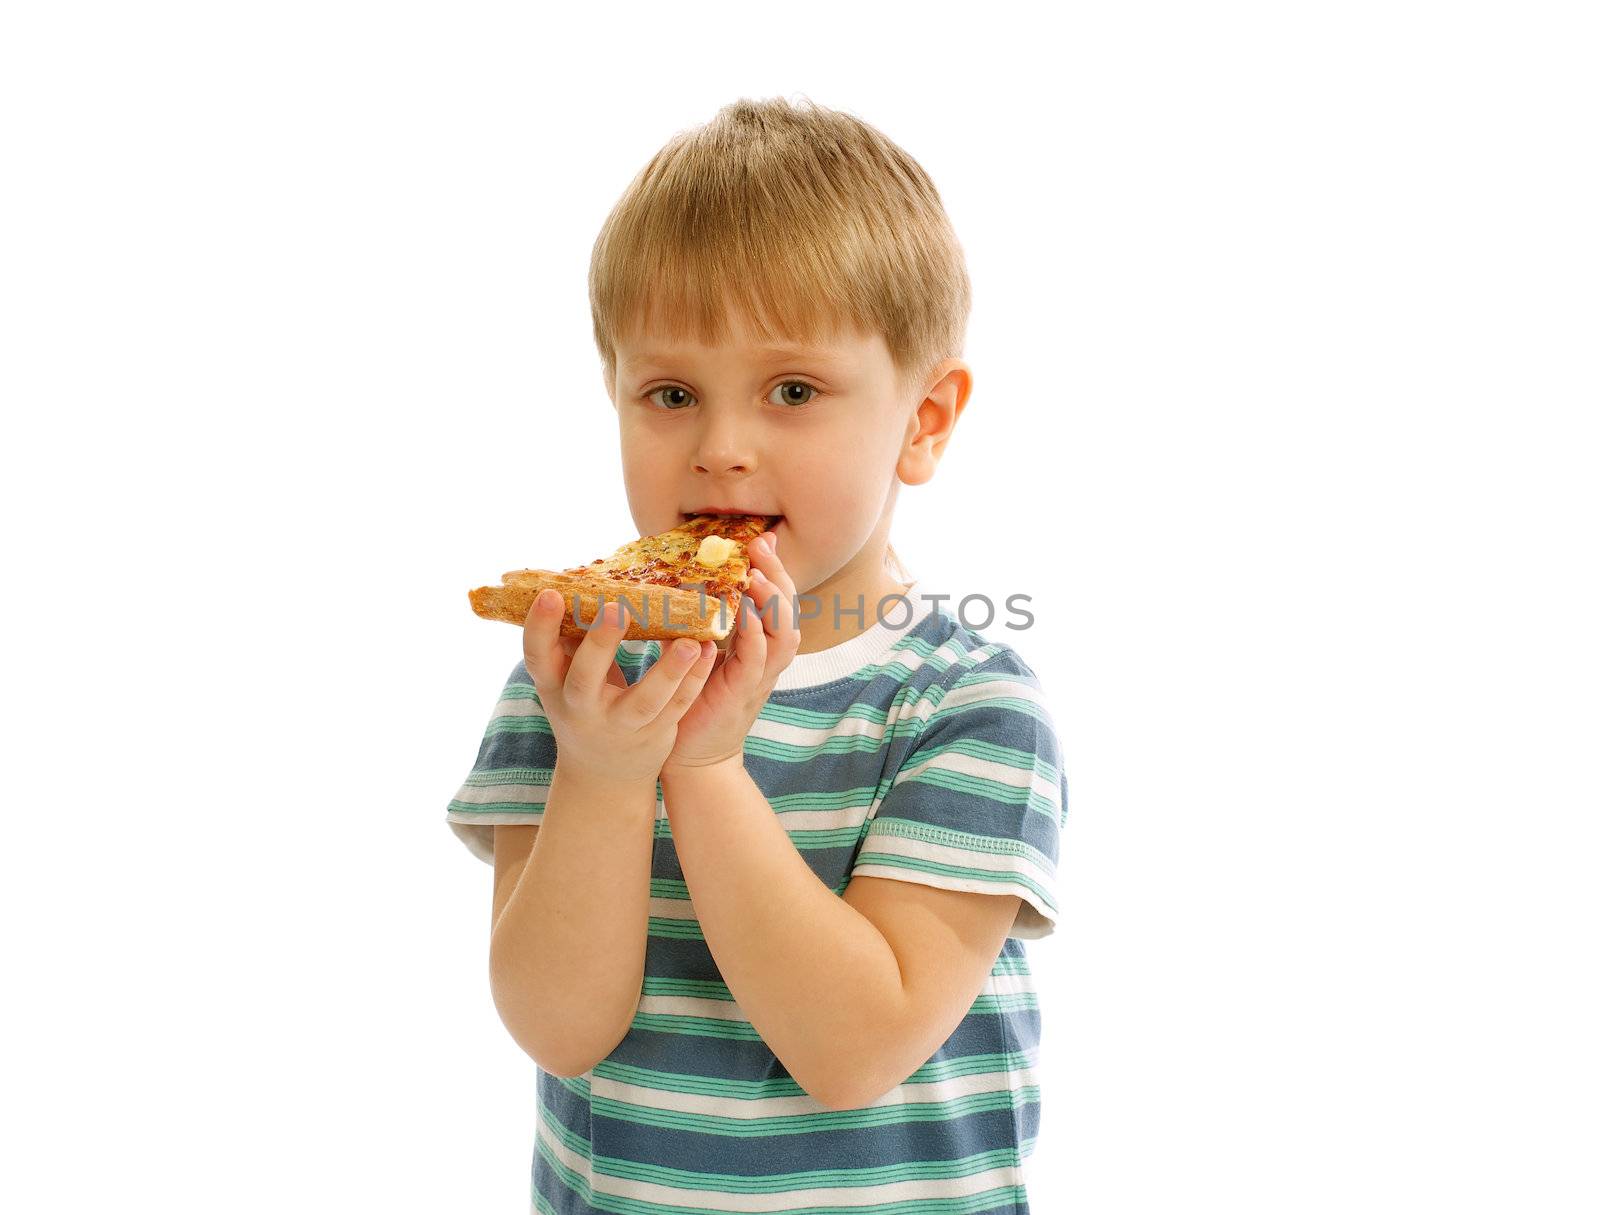 Little Boy with Pizza by zhekos